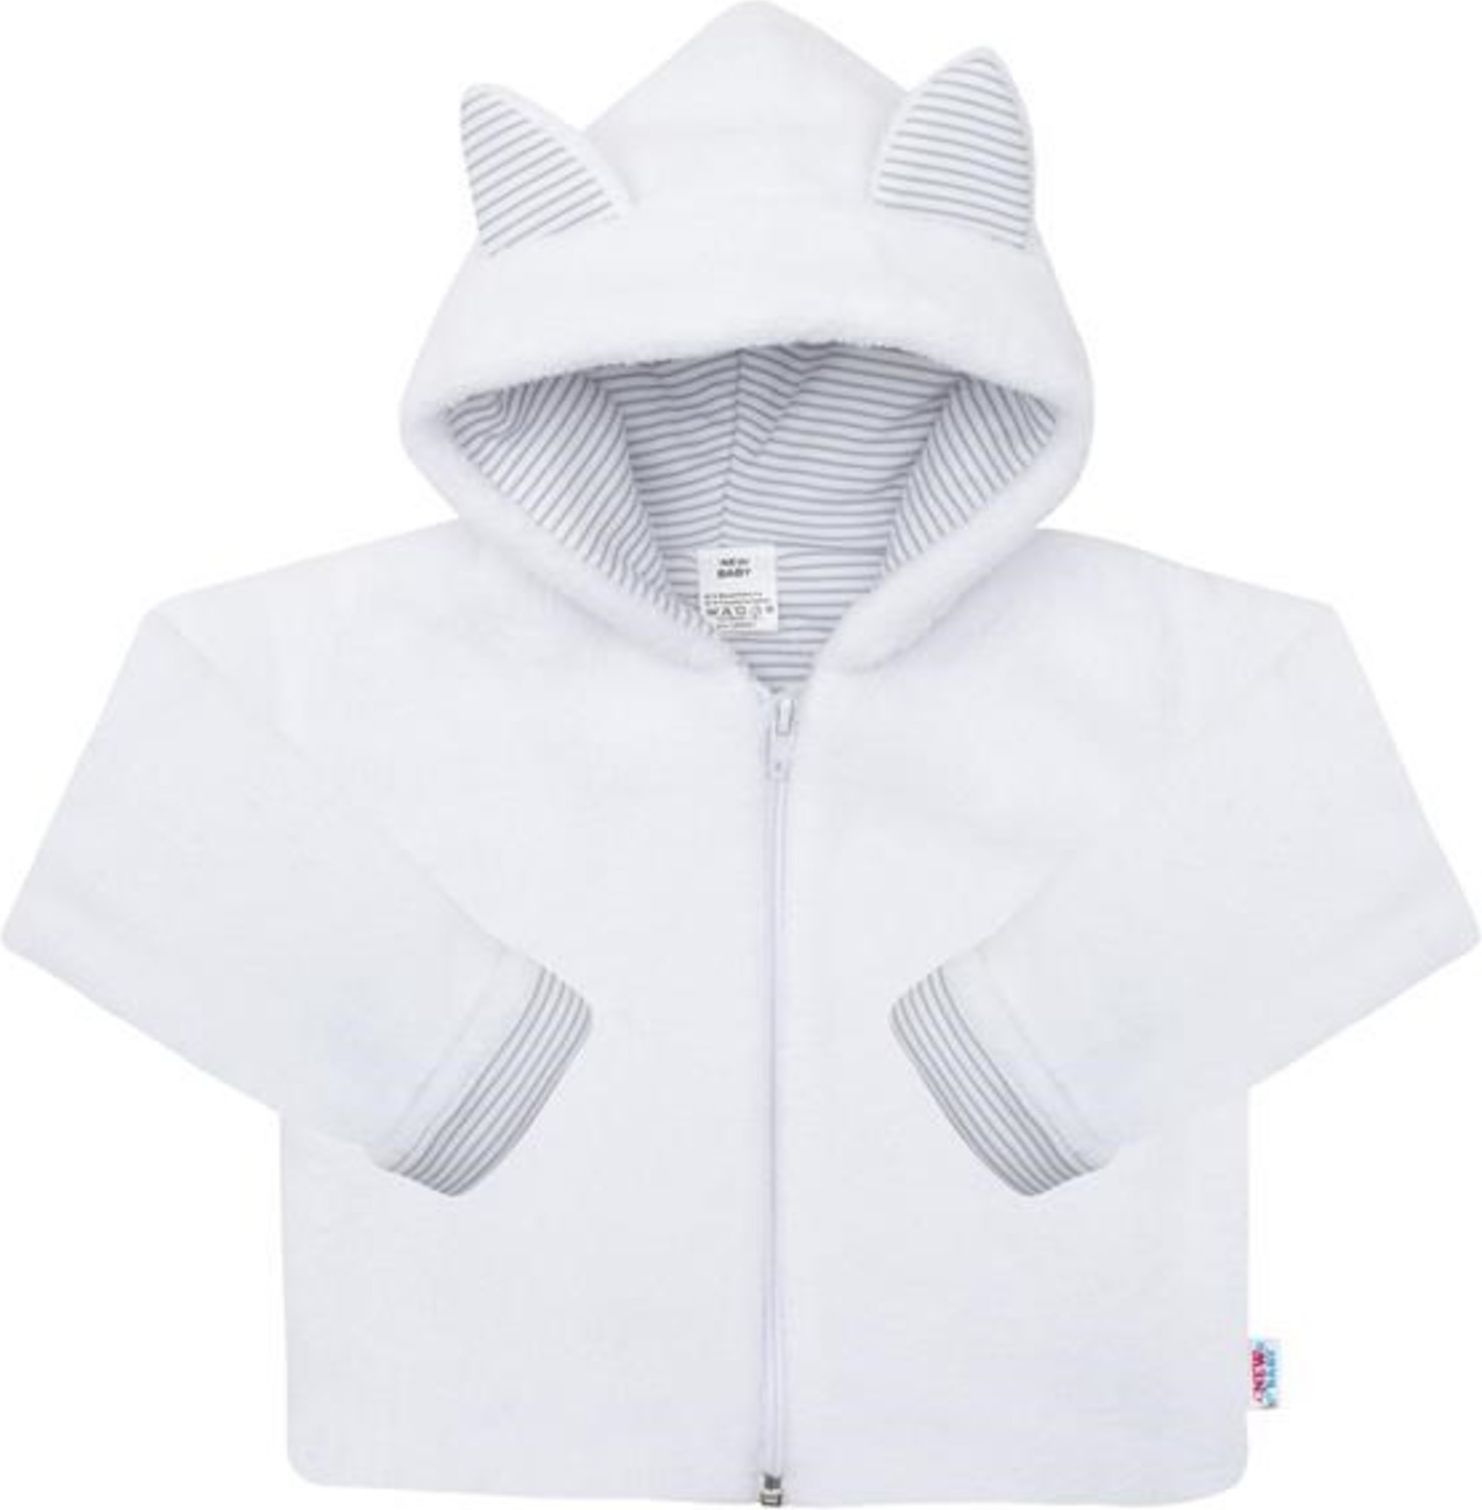 Luxusní dětský zimní kabátek s kapucí New Baby Snowy collection - Luxusní dětský zimní kabátek s kapucí New Baby Snowy collection - obrázek 1